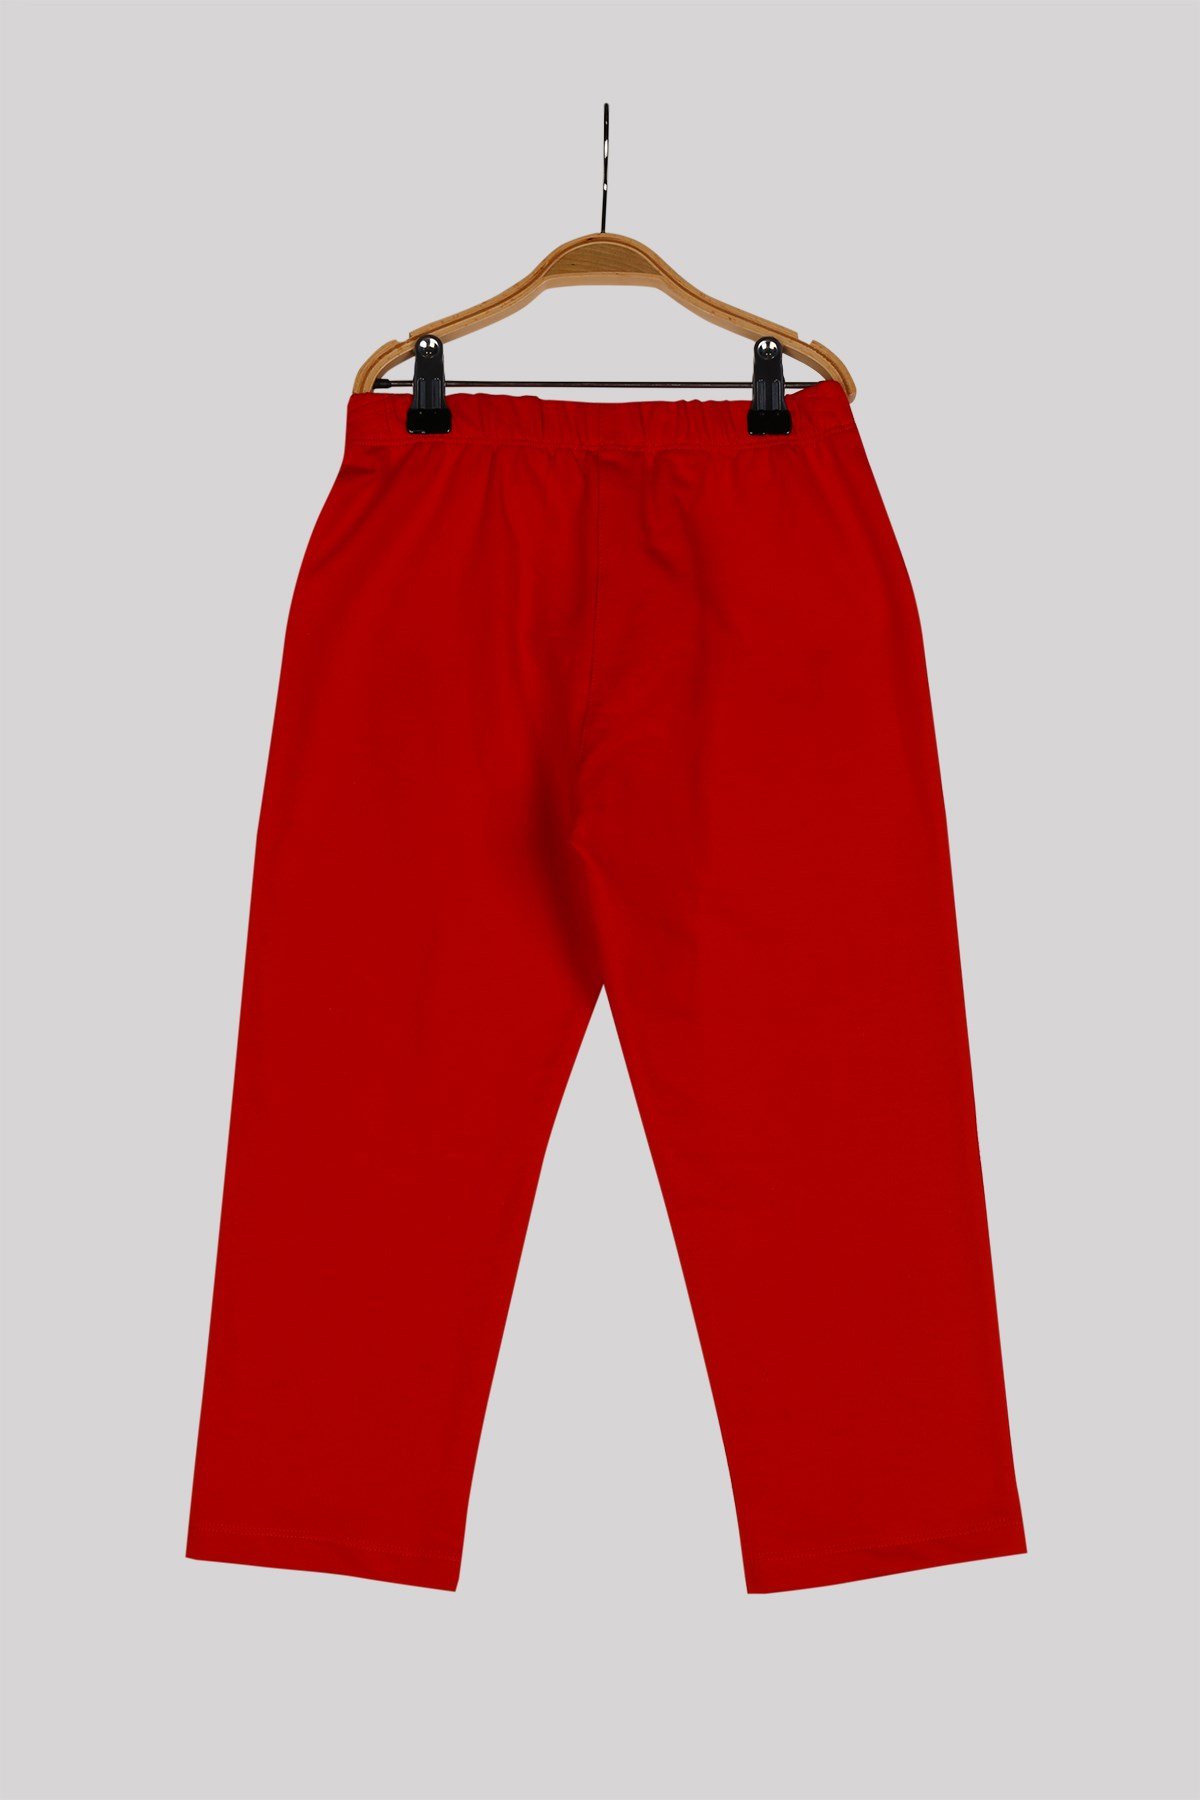 ZEYLAND Unisex Çocuk Kırmızı Örme Pantolon (4-12yaş)